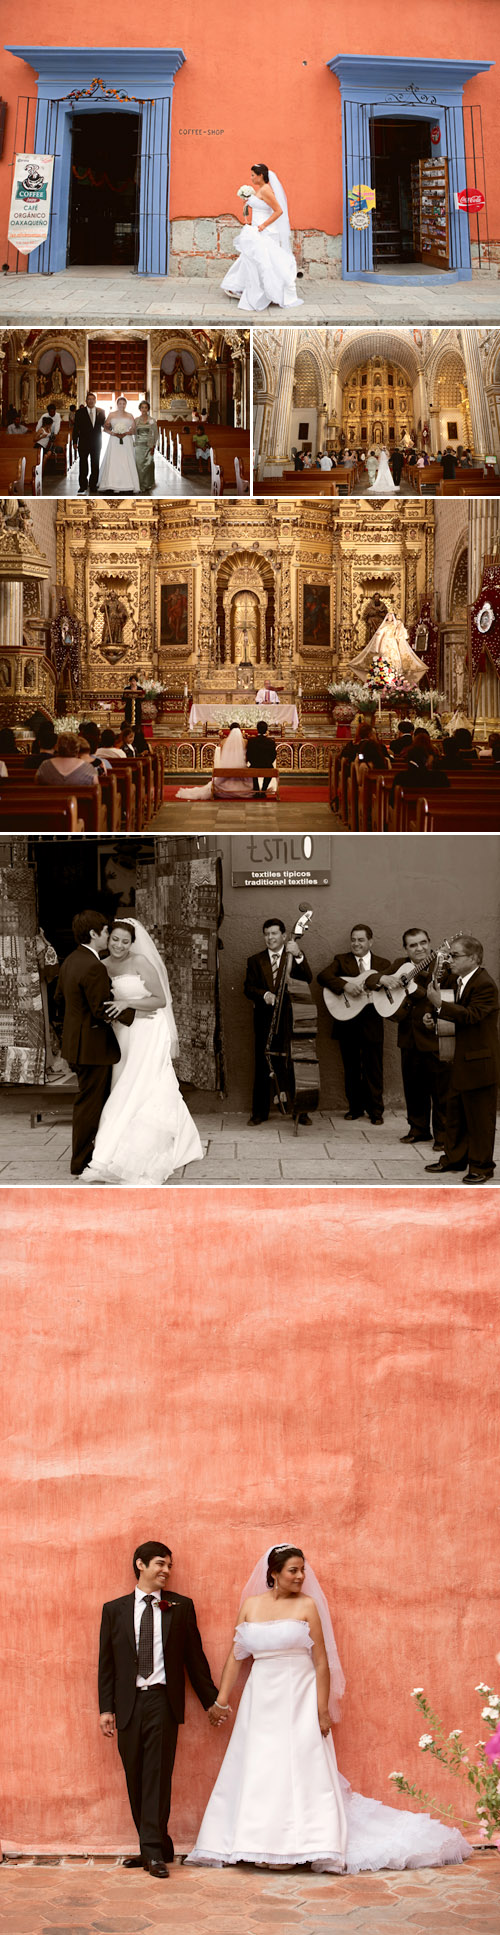 Oaxaca, Mexico Dia De Los Muertos real wedding ceremony, photographed by Roberto Valenzuela